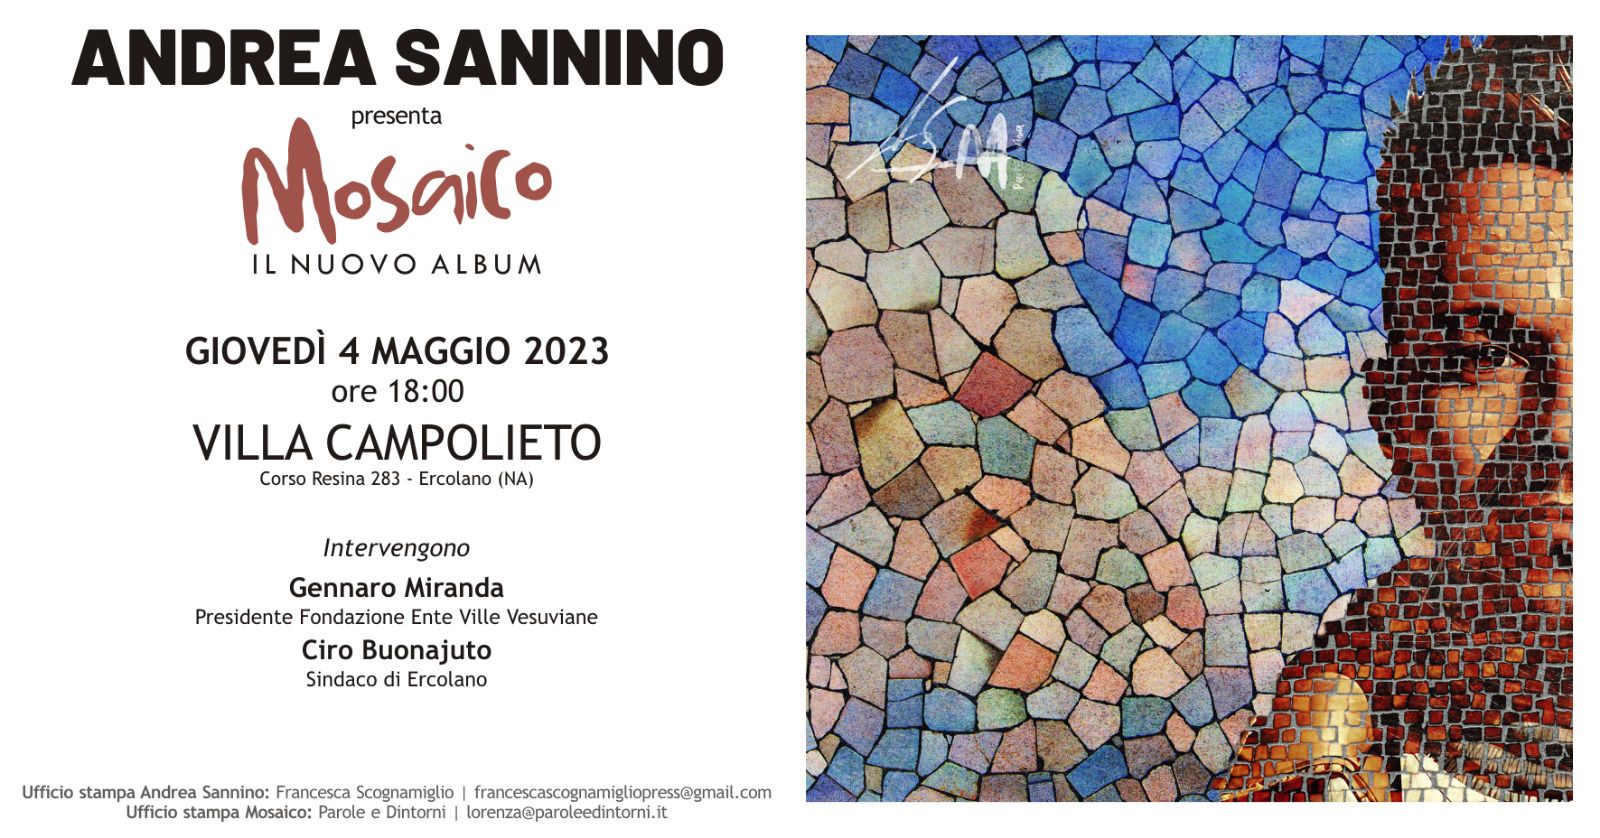 Andrea Sannino presenta il nuovo album “Mosaico” a Villa Campolieto